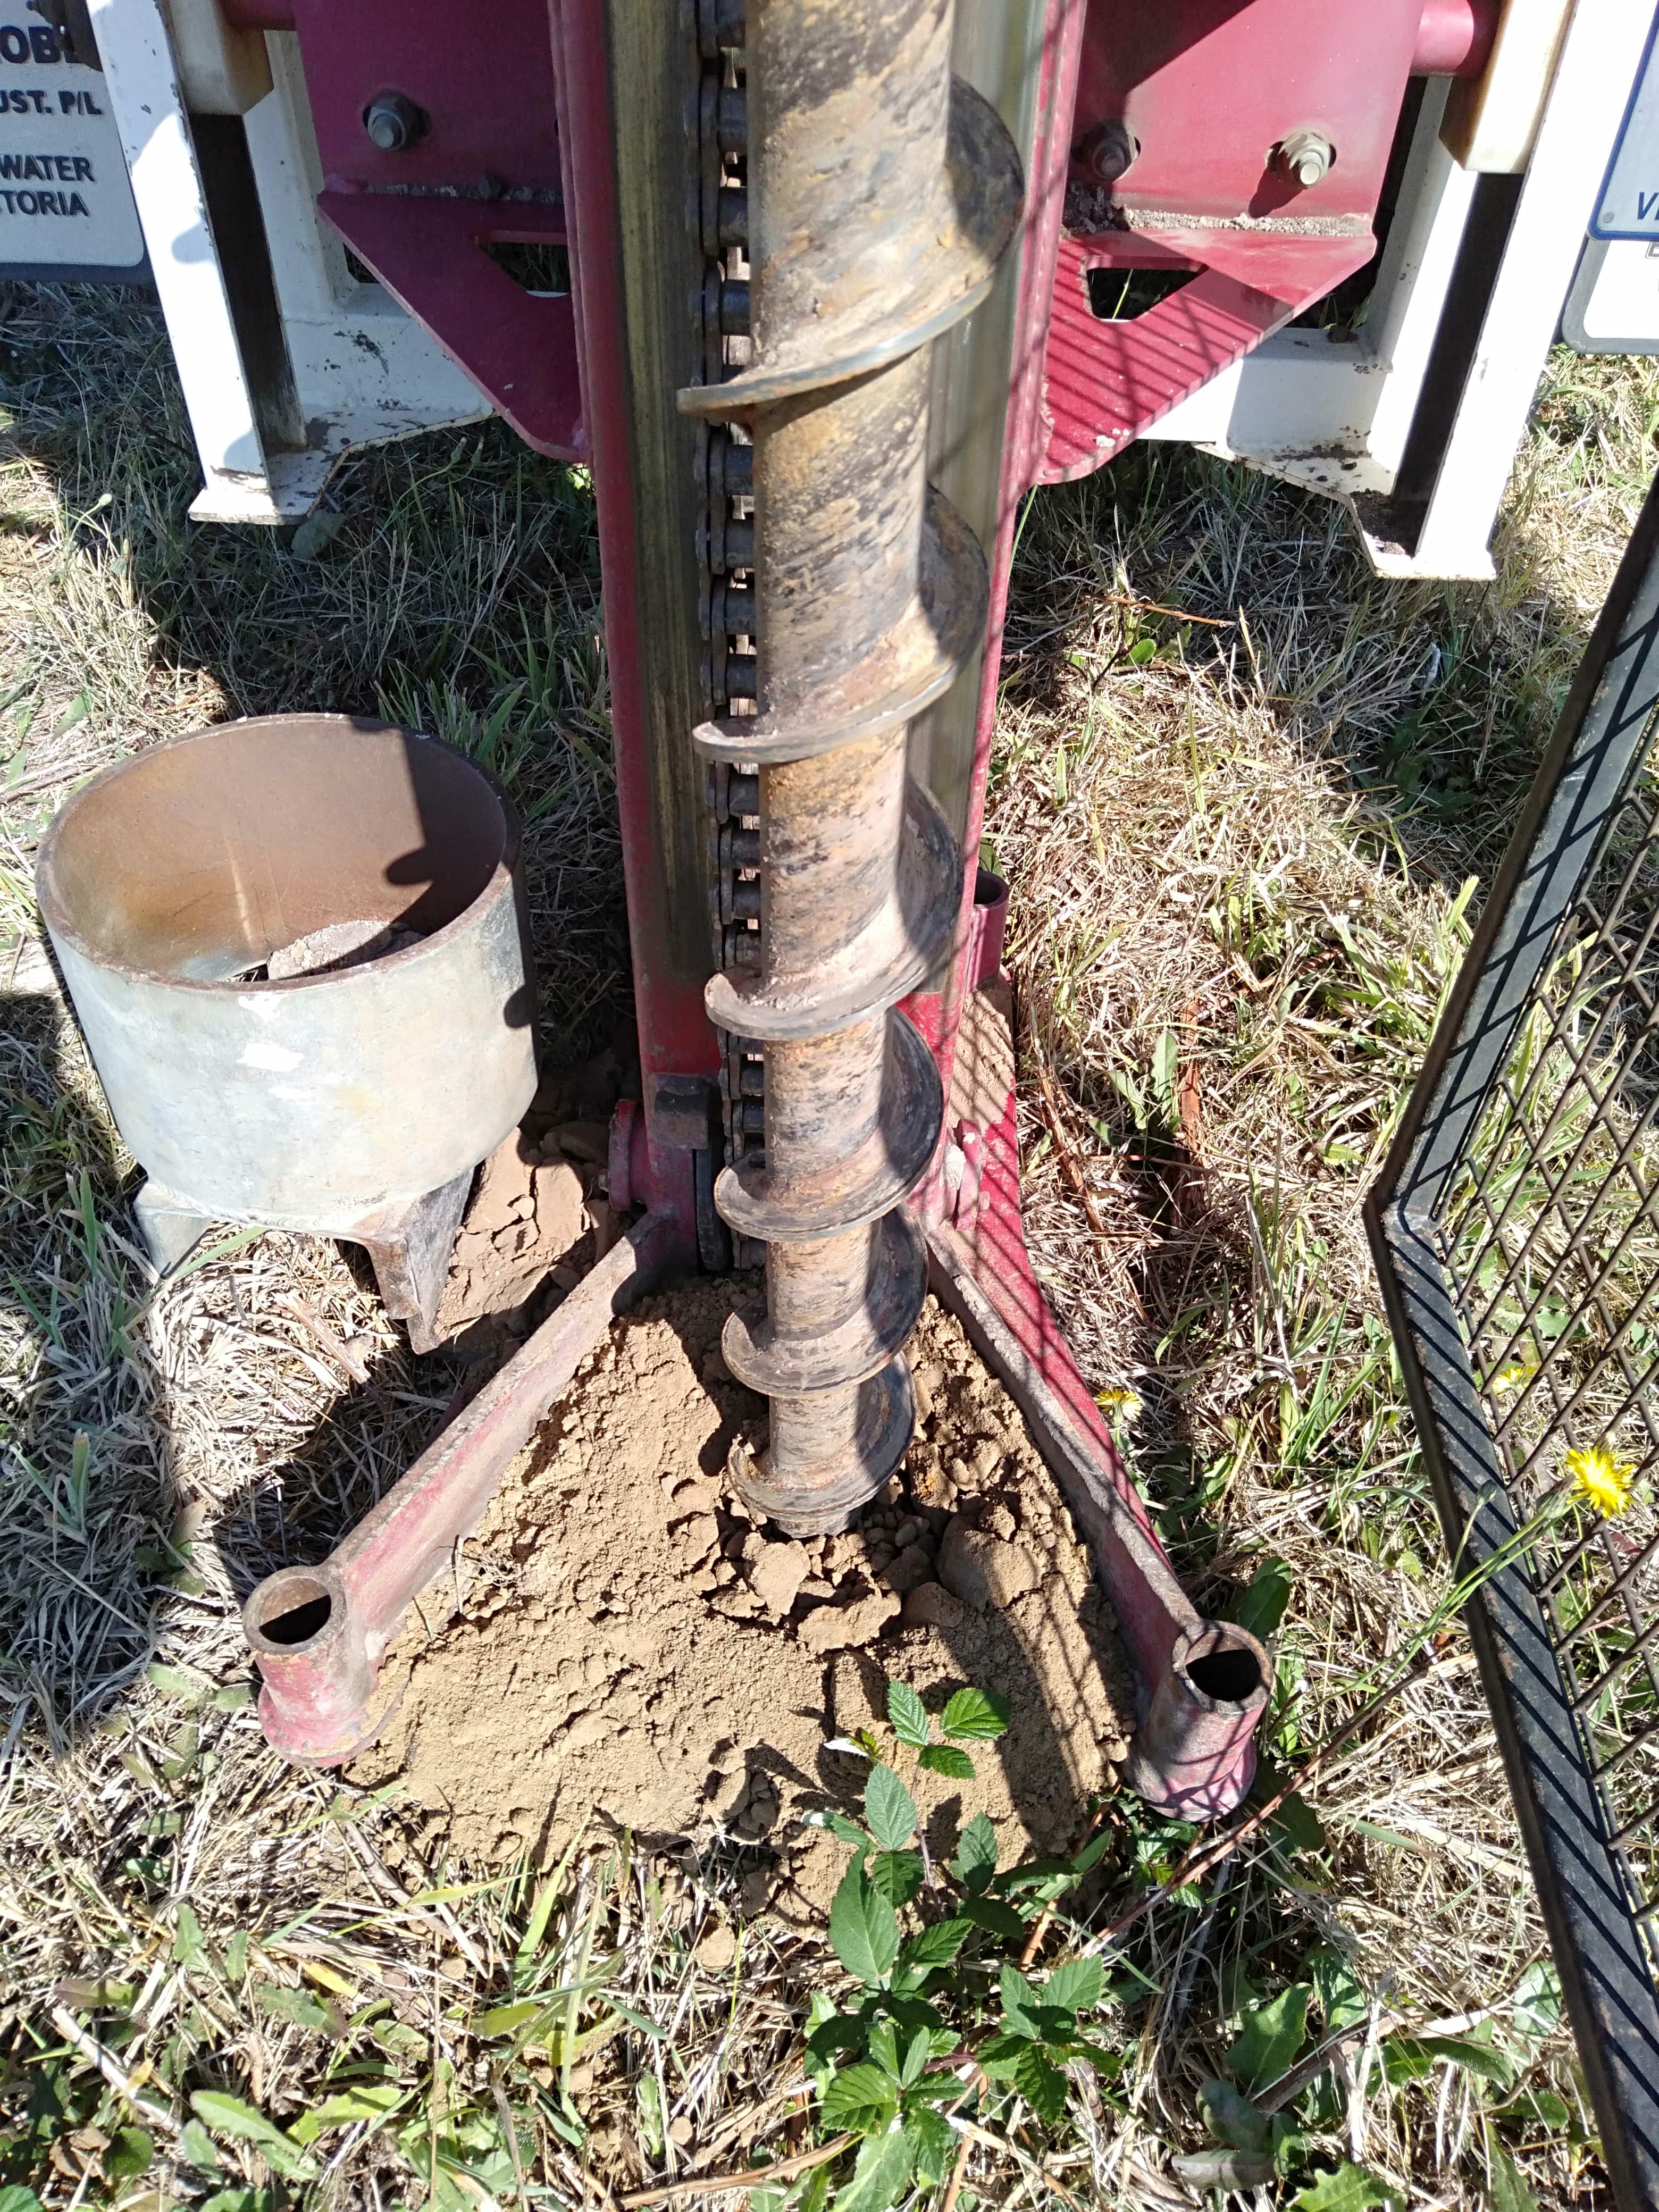 soil testing for construction